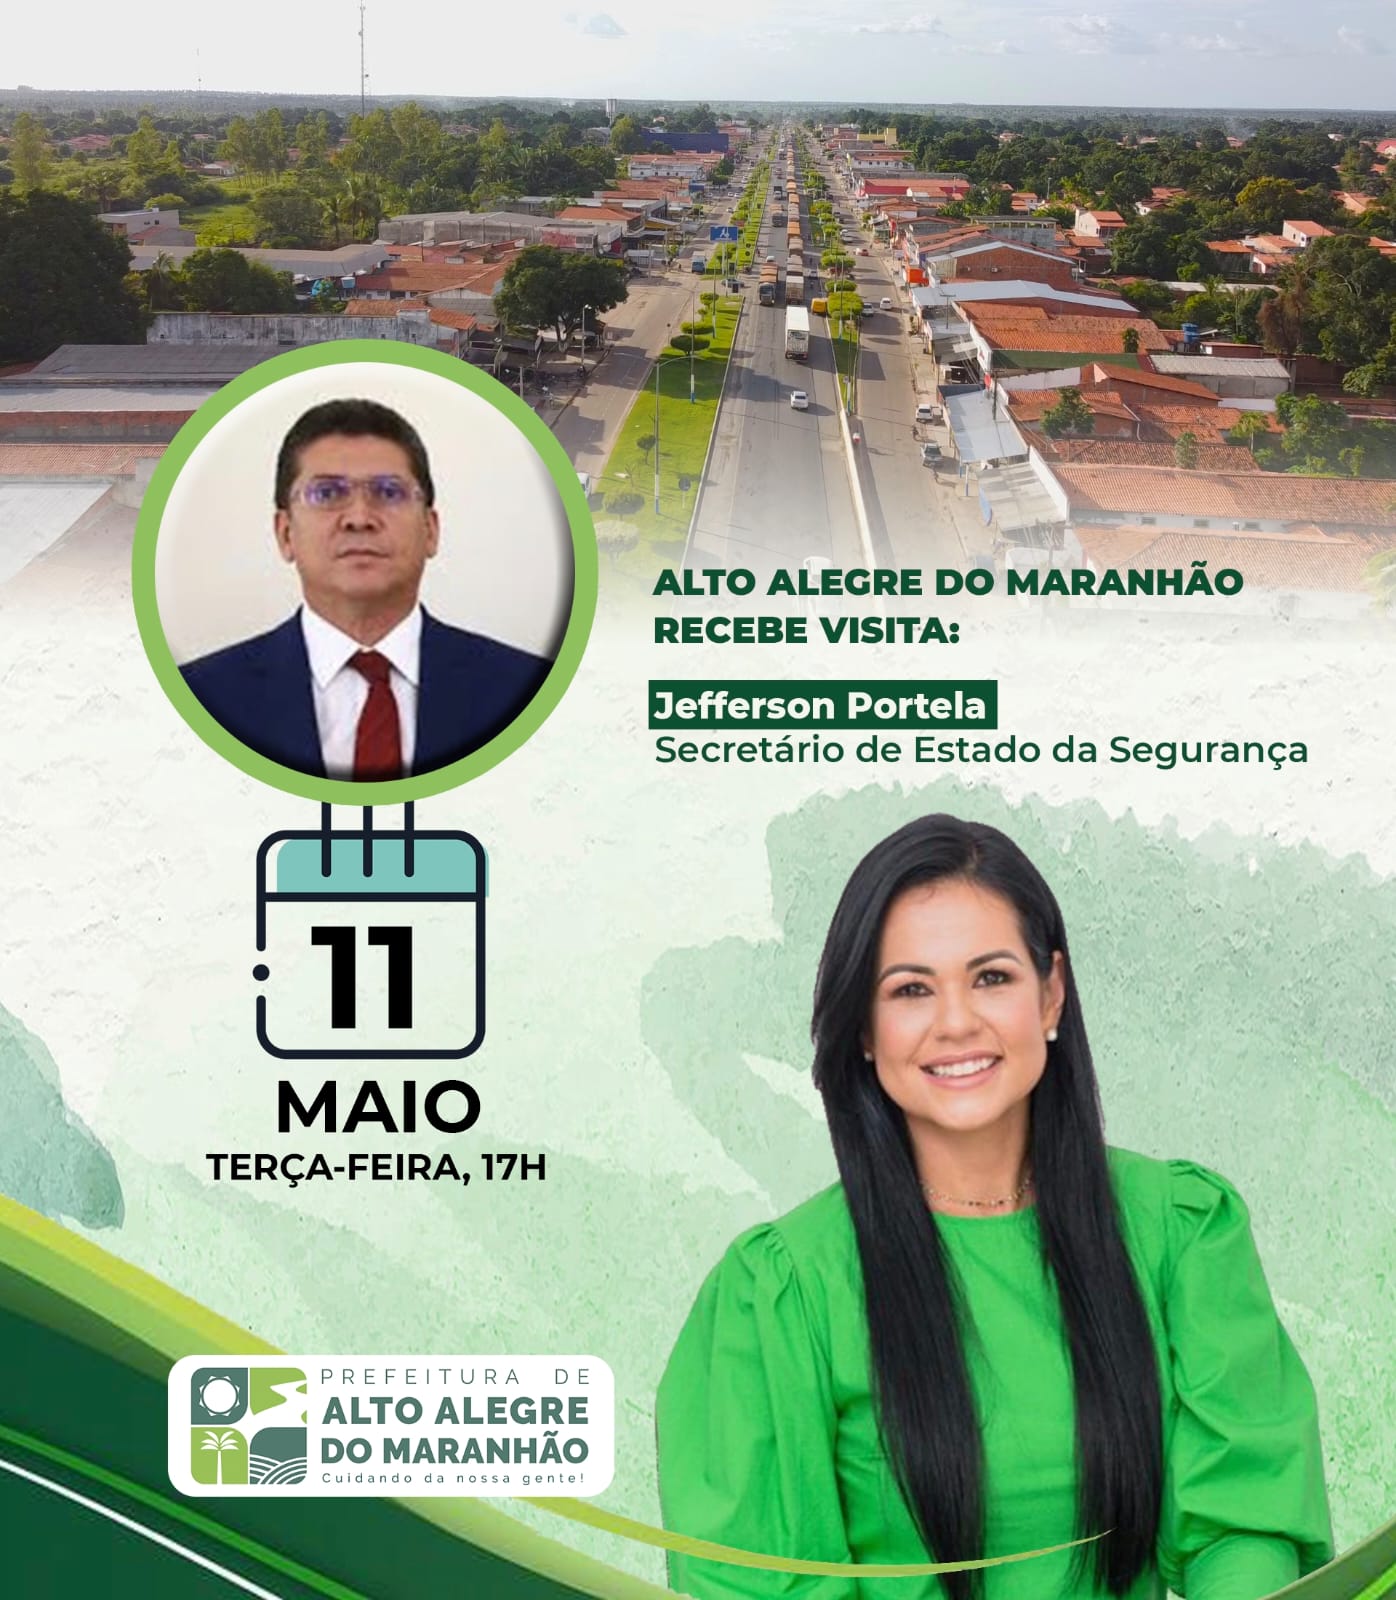 CONFIRMADO! Alto Alegre do Maranhão receberá visita do Secretário de Estado de Segurança Pública do Maranhão Jefferson Portela